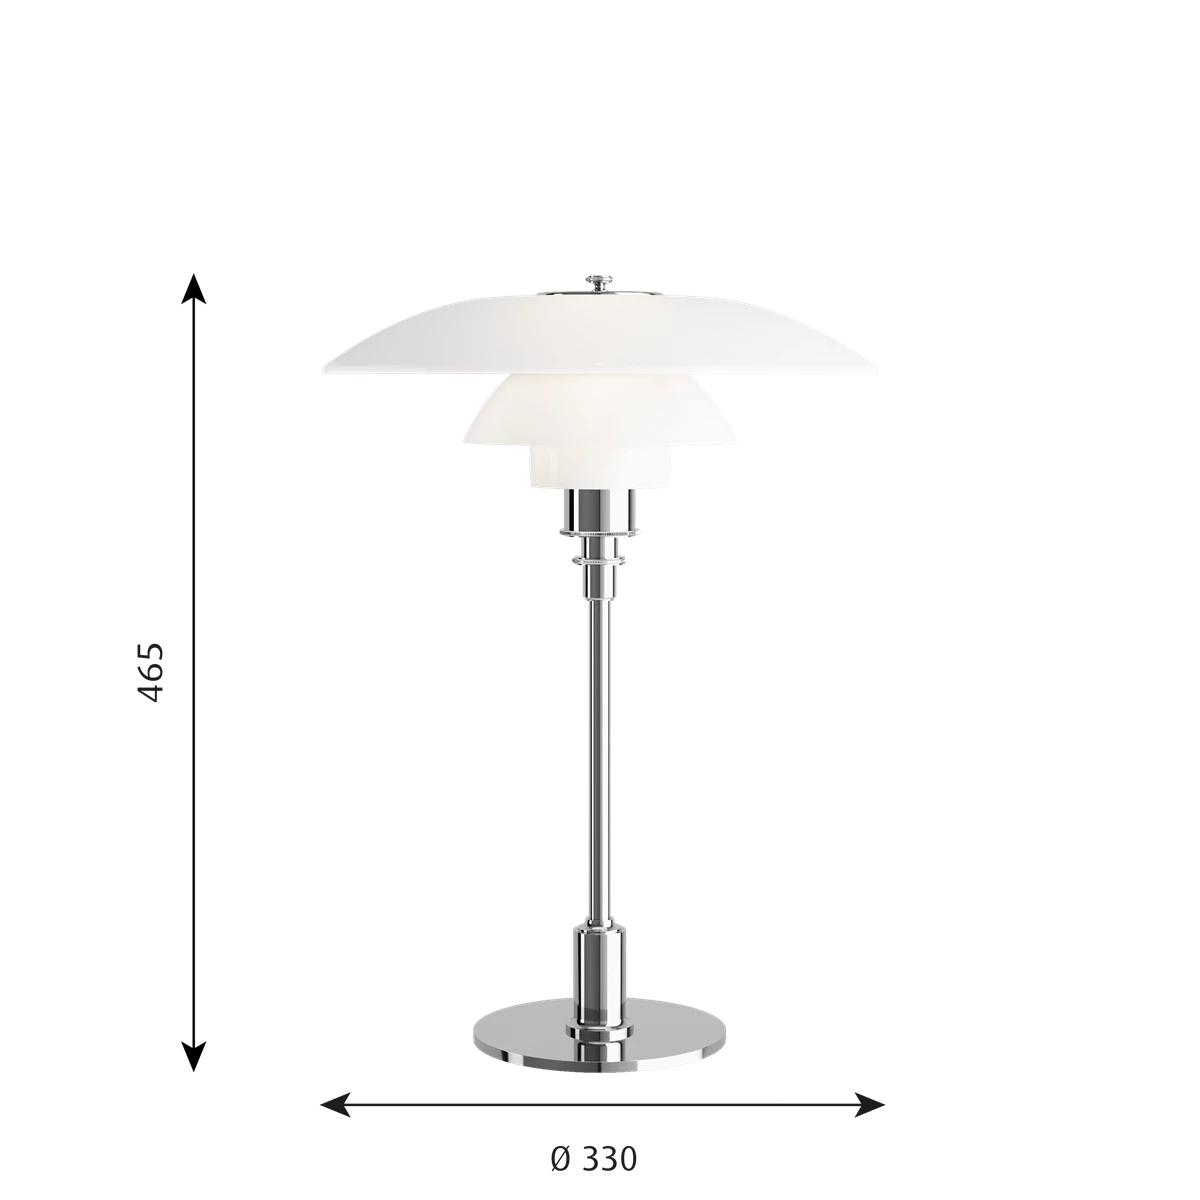 Table lamp by Louis poulsen